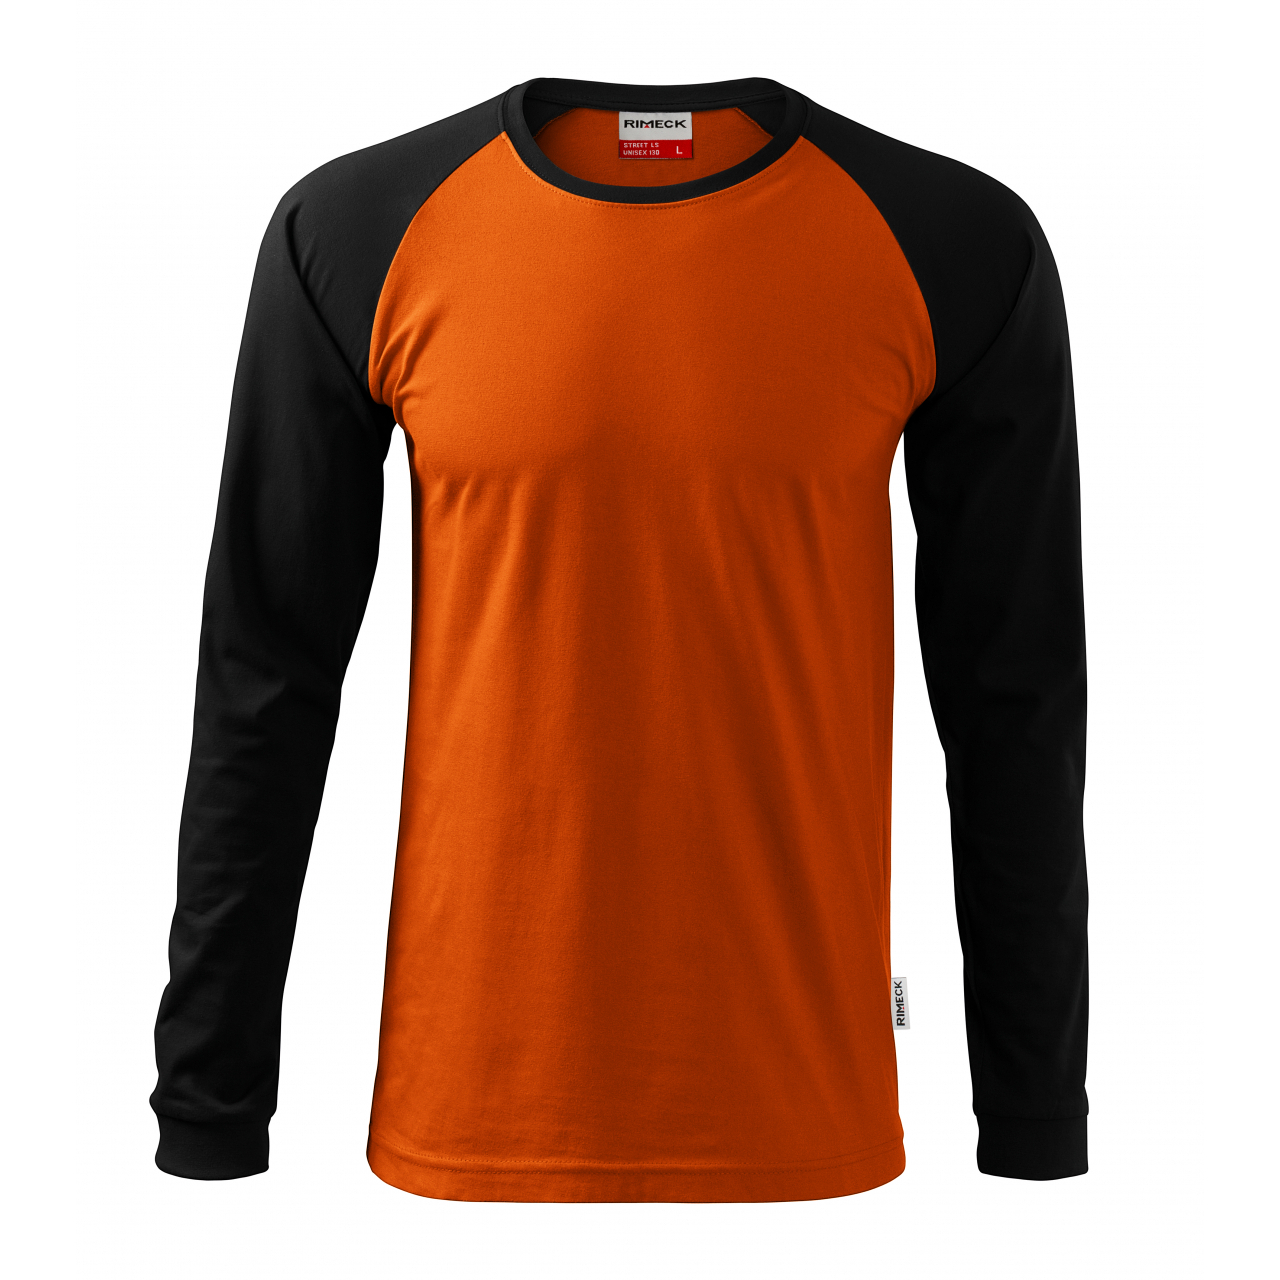 Tričko unisex Rimeck Street Long Sleeve - oranžové-černé, 3XL